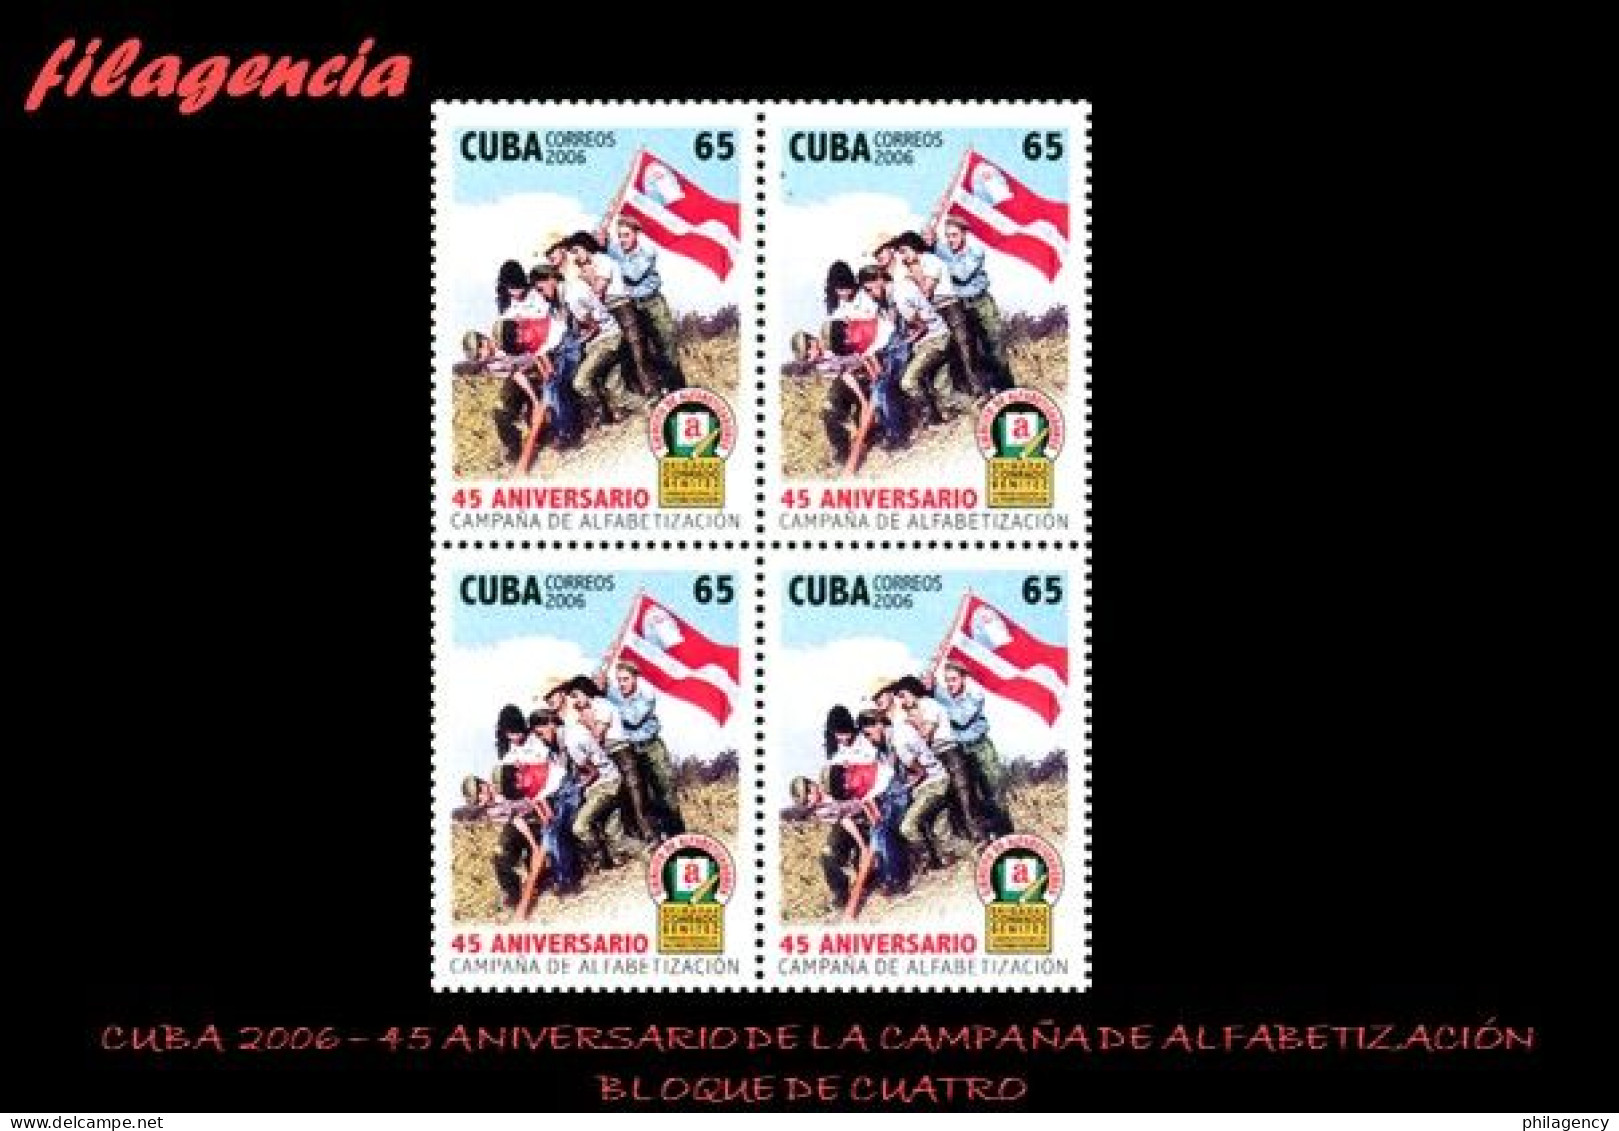 CUBA. BLOQUES DE CUATRO. 2006-37 45 ANIVERSARIO DE LA CAMPAÑA DE ALFABETIZACIÓN - Ungebraucht